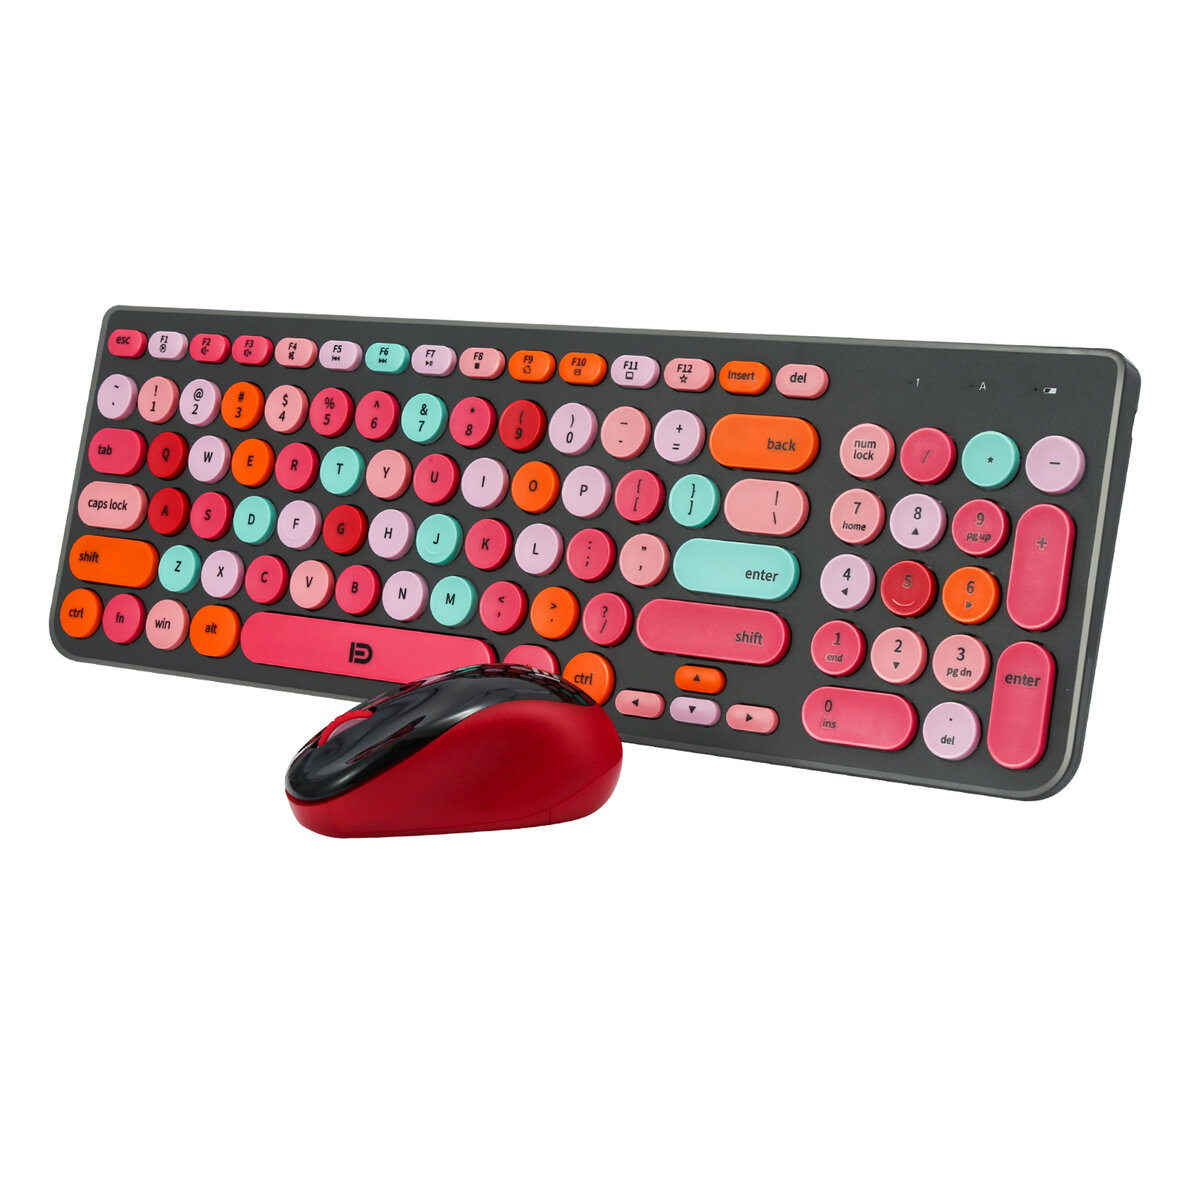 FD ik6630M 2.4GHz Wireless Keyboard & Mouse Set 99 Keys Round Keycaps Silent Rechargeable Keyboard 1